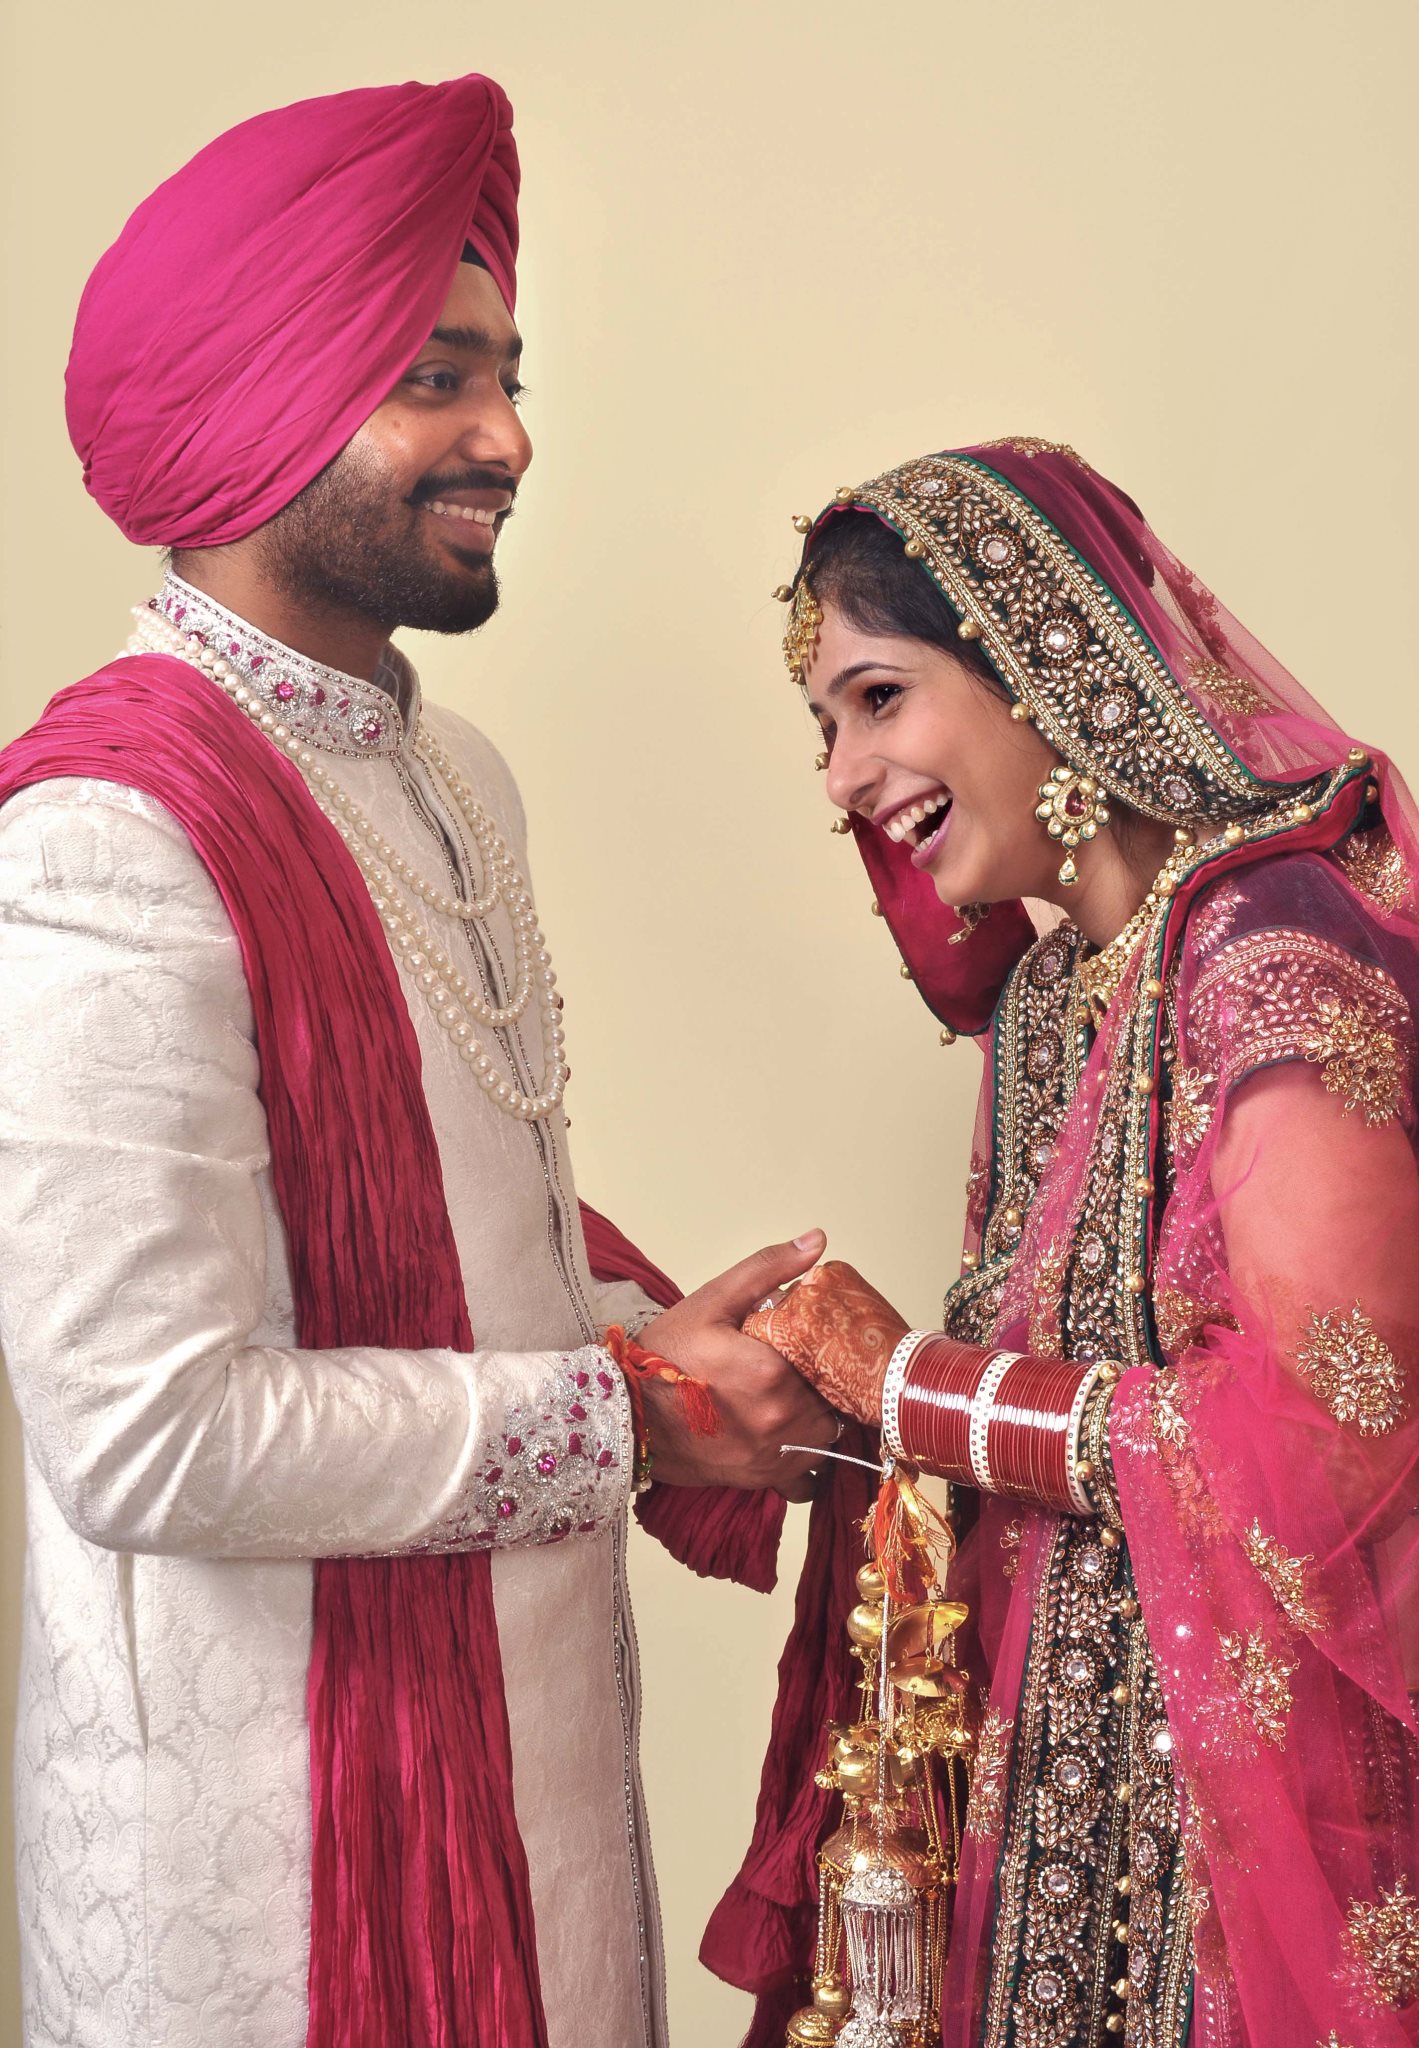 42+] Punjabi Couples Wallpapers - WallpaperSafari